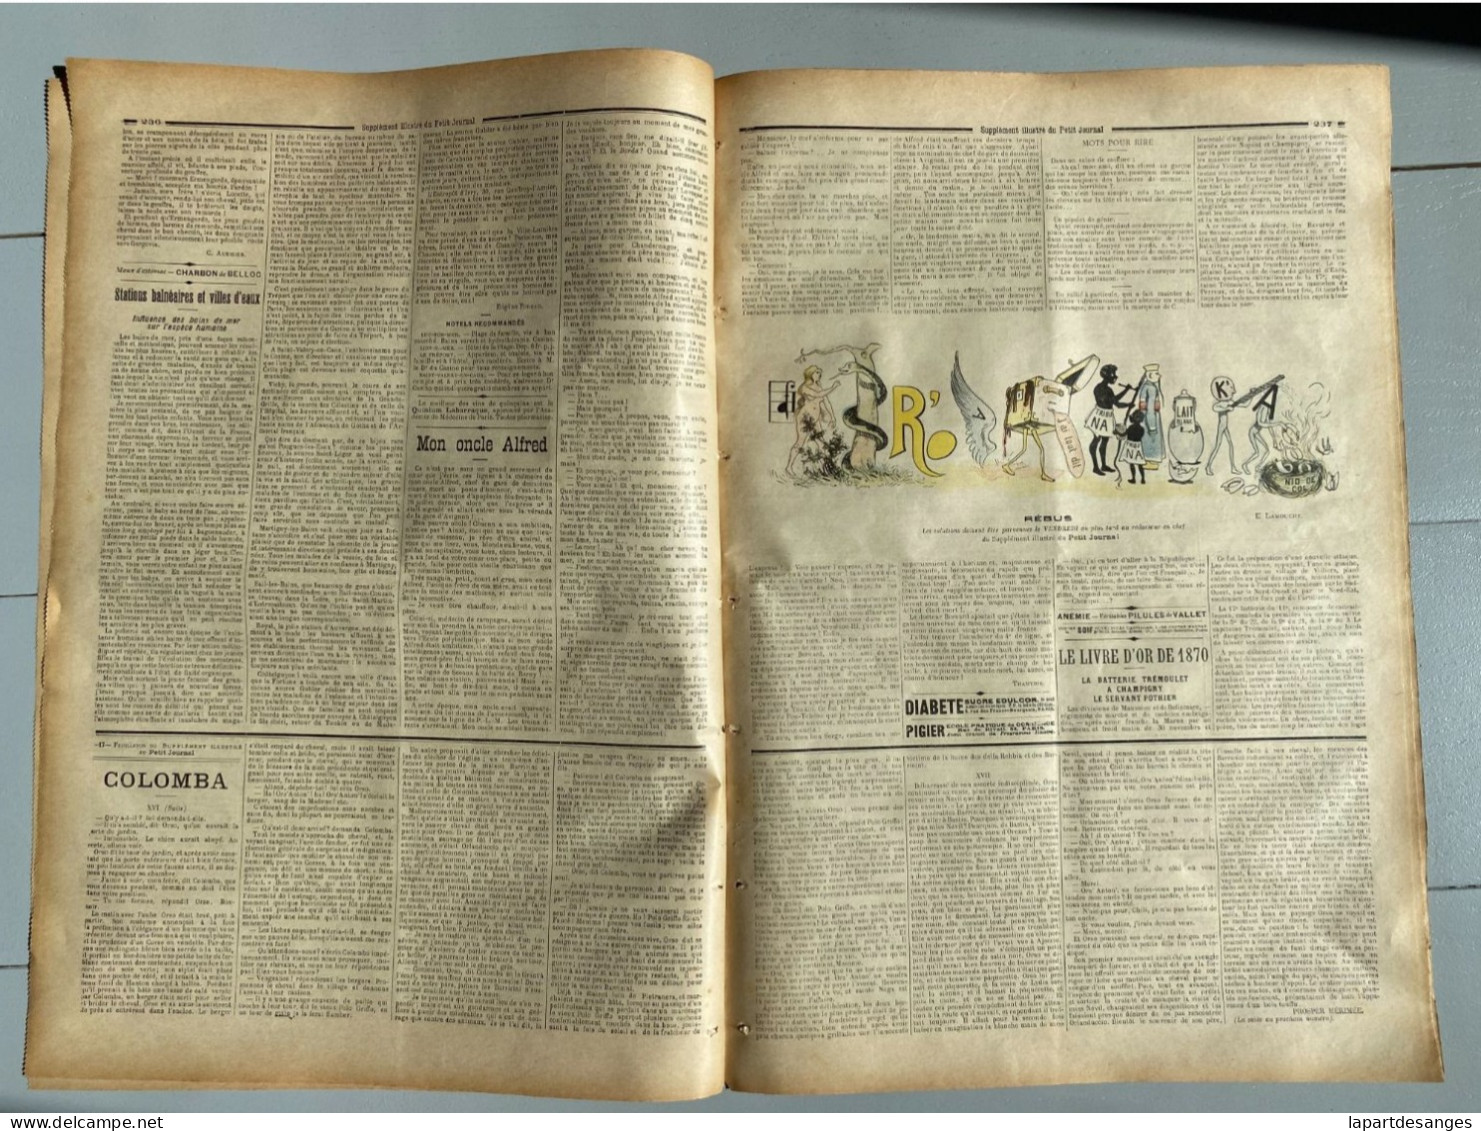 LE PETIT JOURNAL N°297 - 26 JUILLET 1896 - VICE ROI LI-HUNG-CHANG - CHINE - CHINA - EVENEMENT EN CRETE - Unclassified